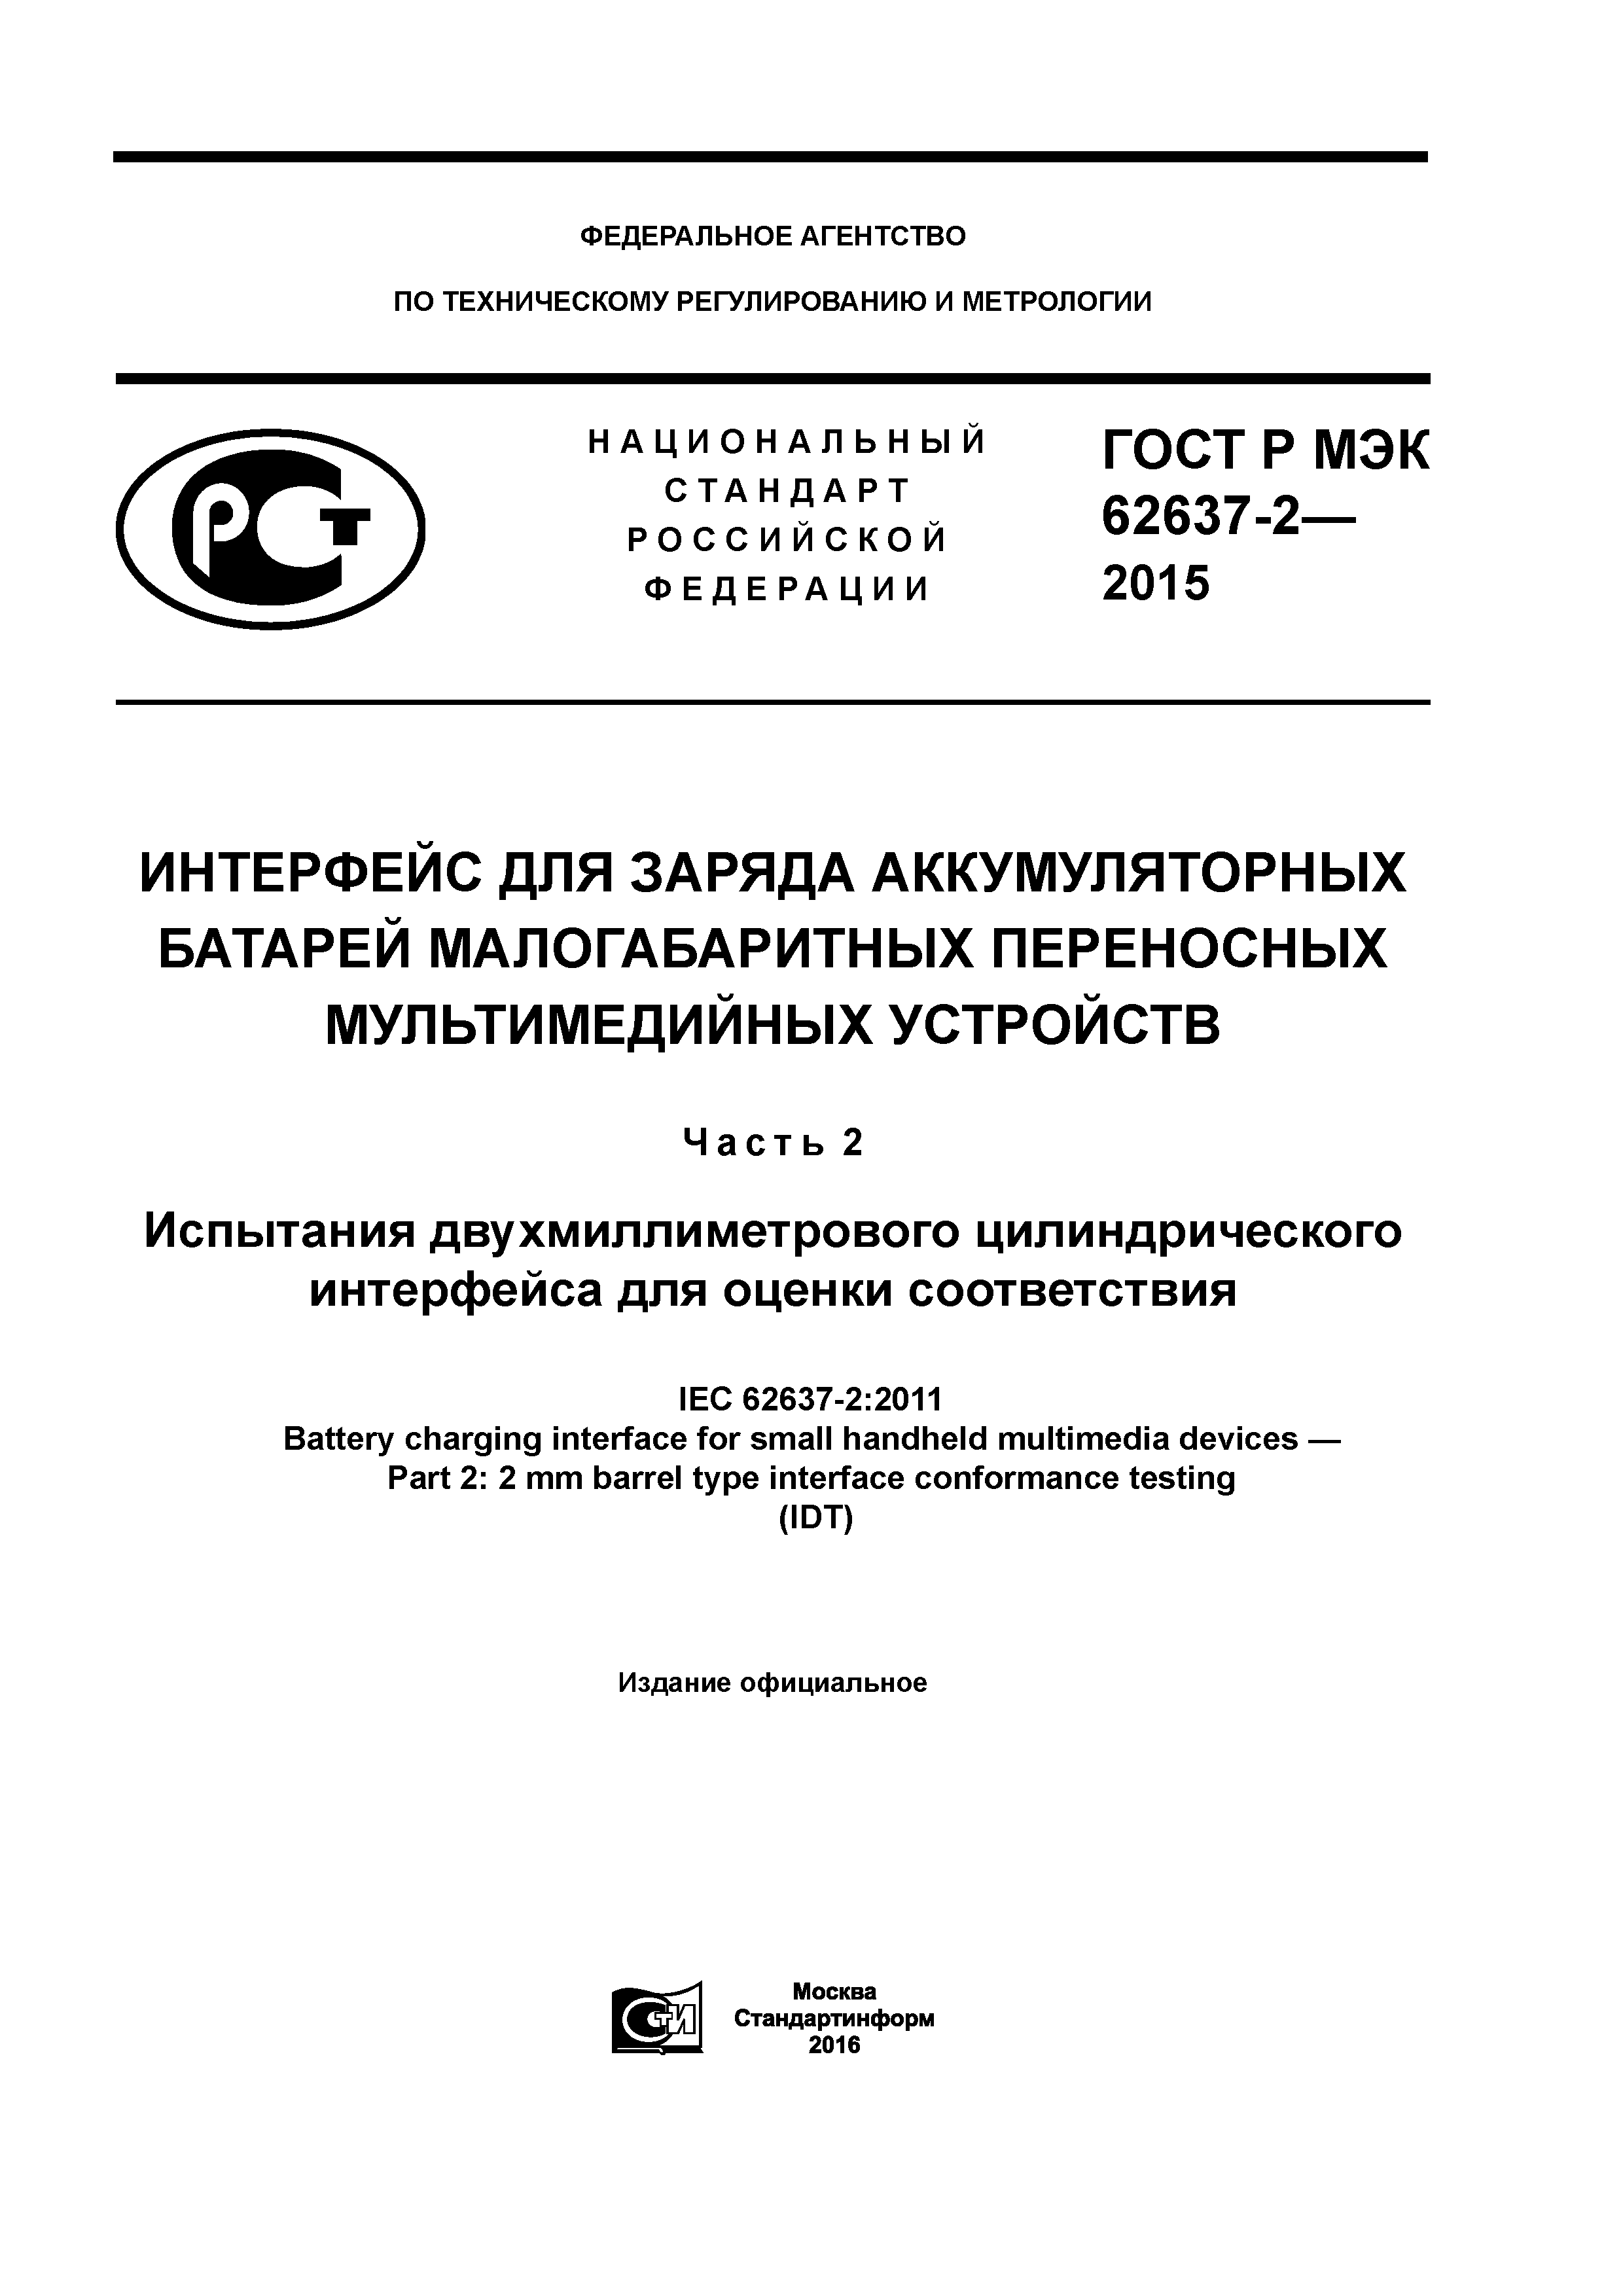 ГОСТ Р МЭК 62637-2-2015